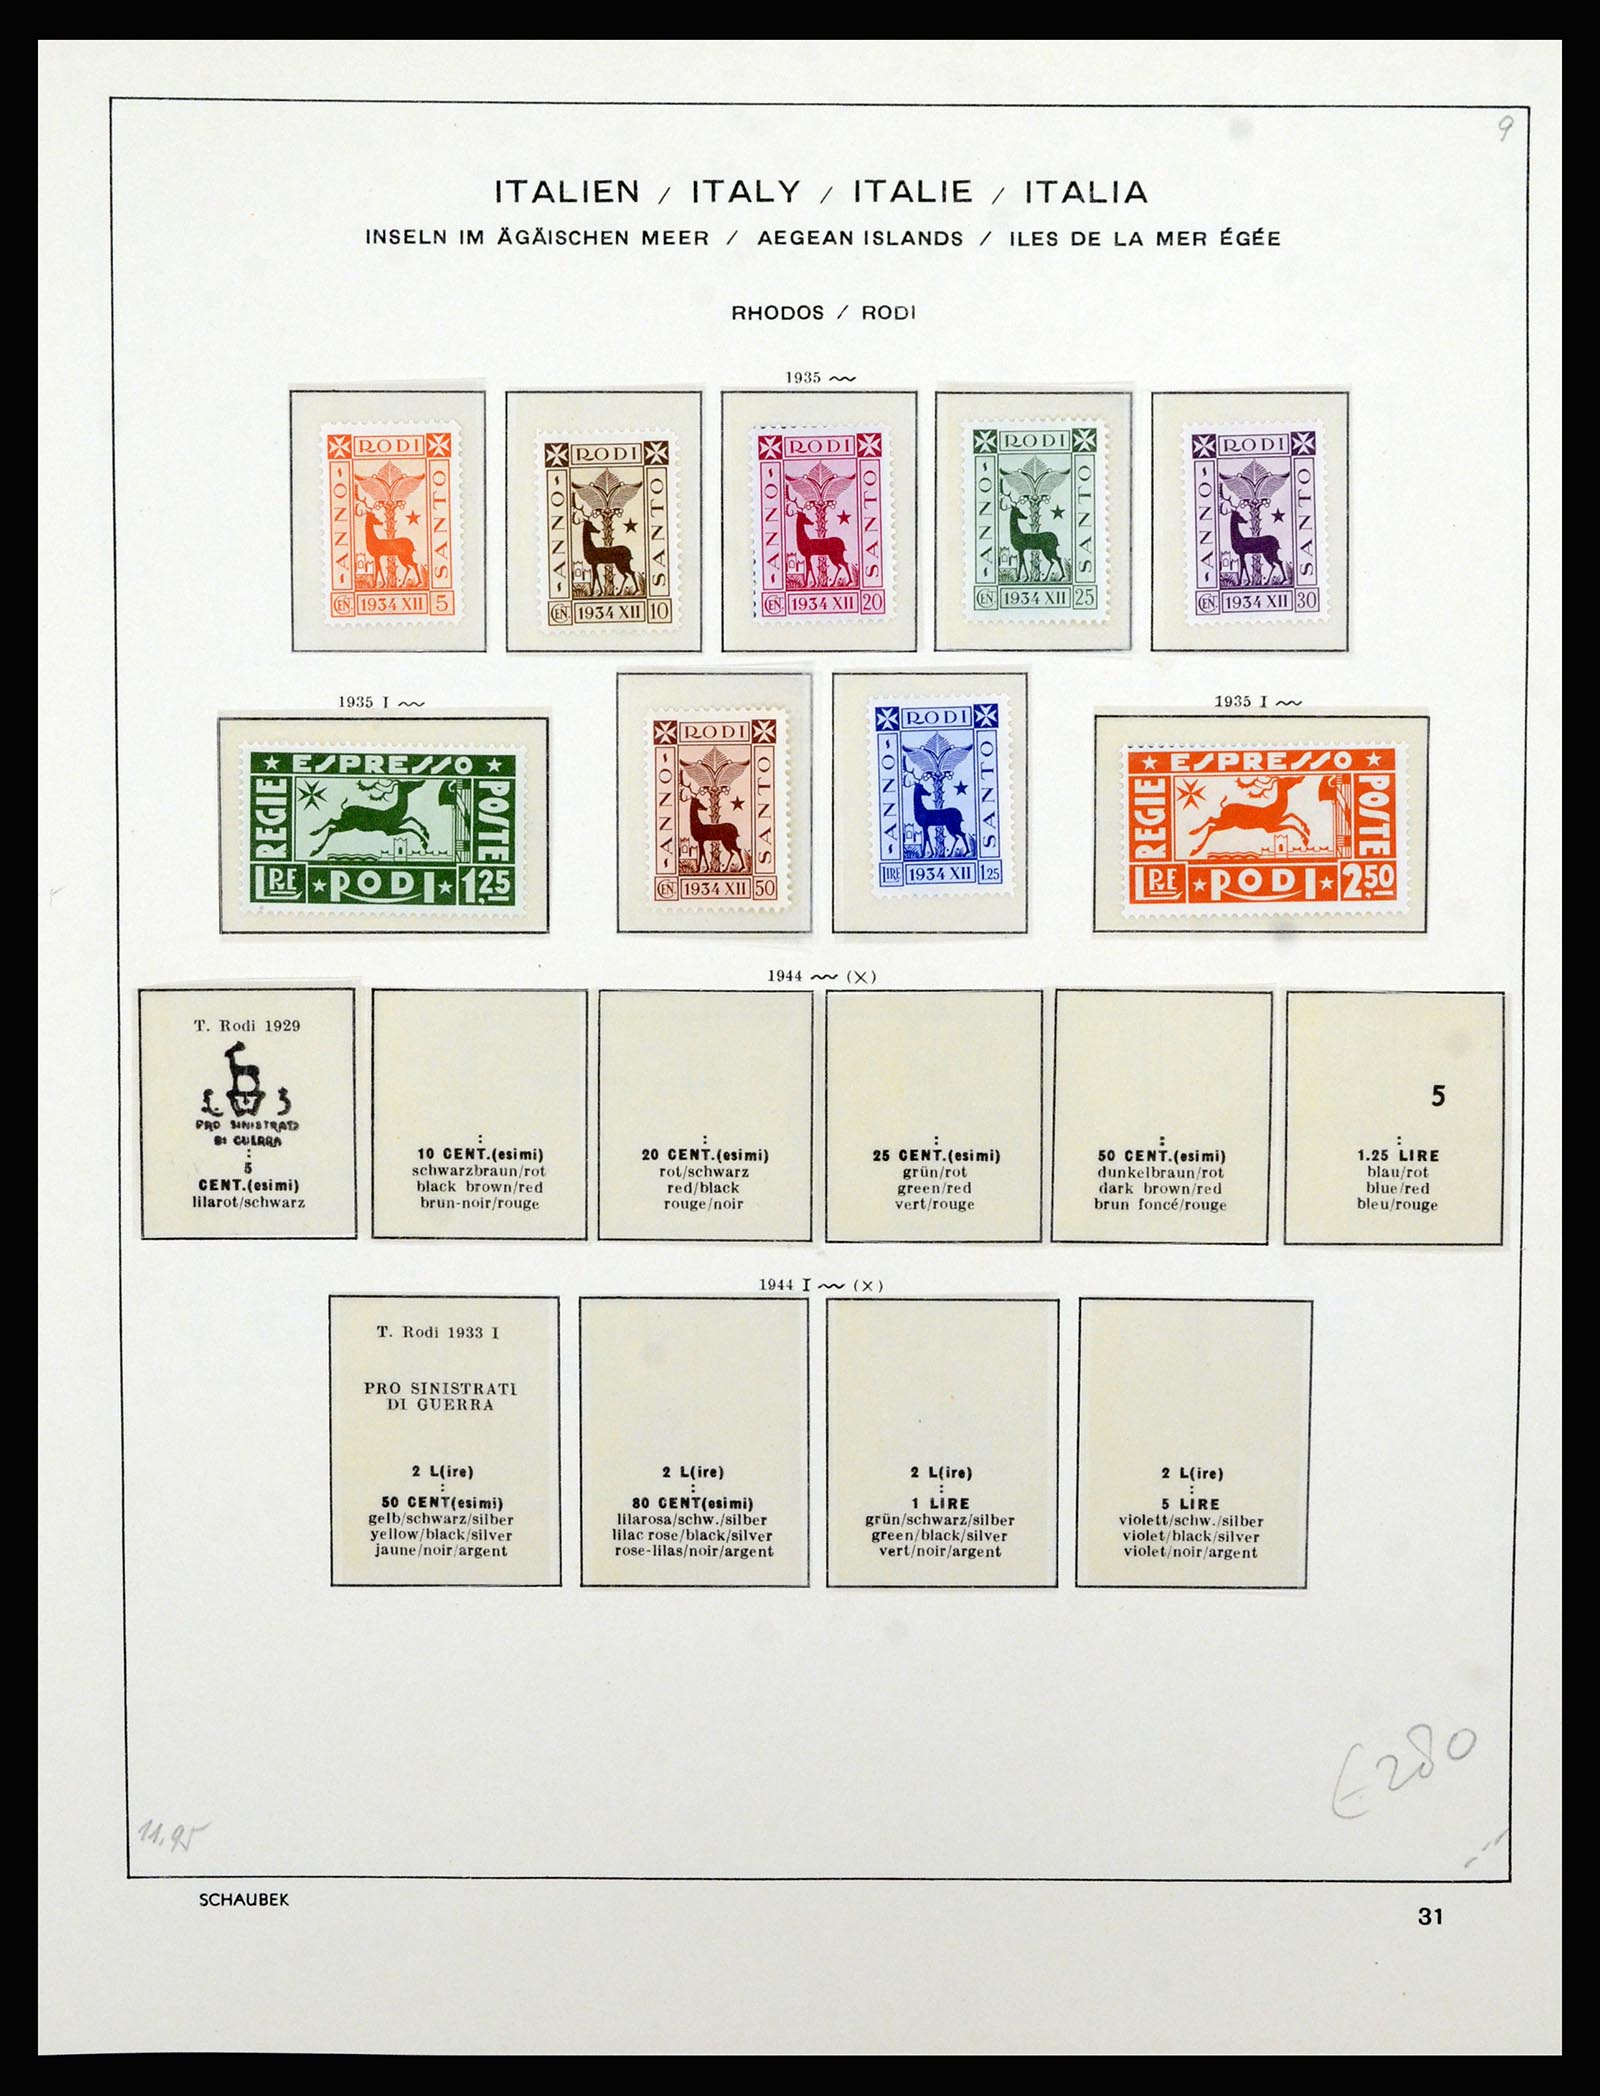 36577 058 - Stamp collection 36577 Italiaanse gebieden 1870-1940.